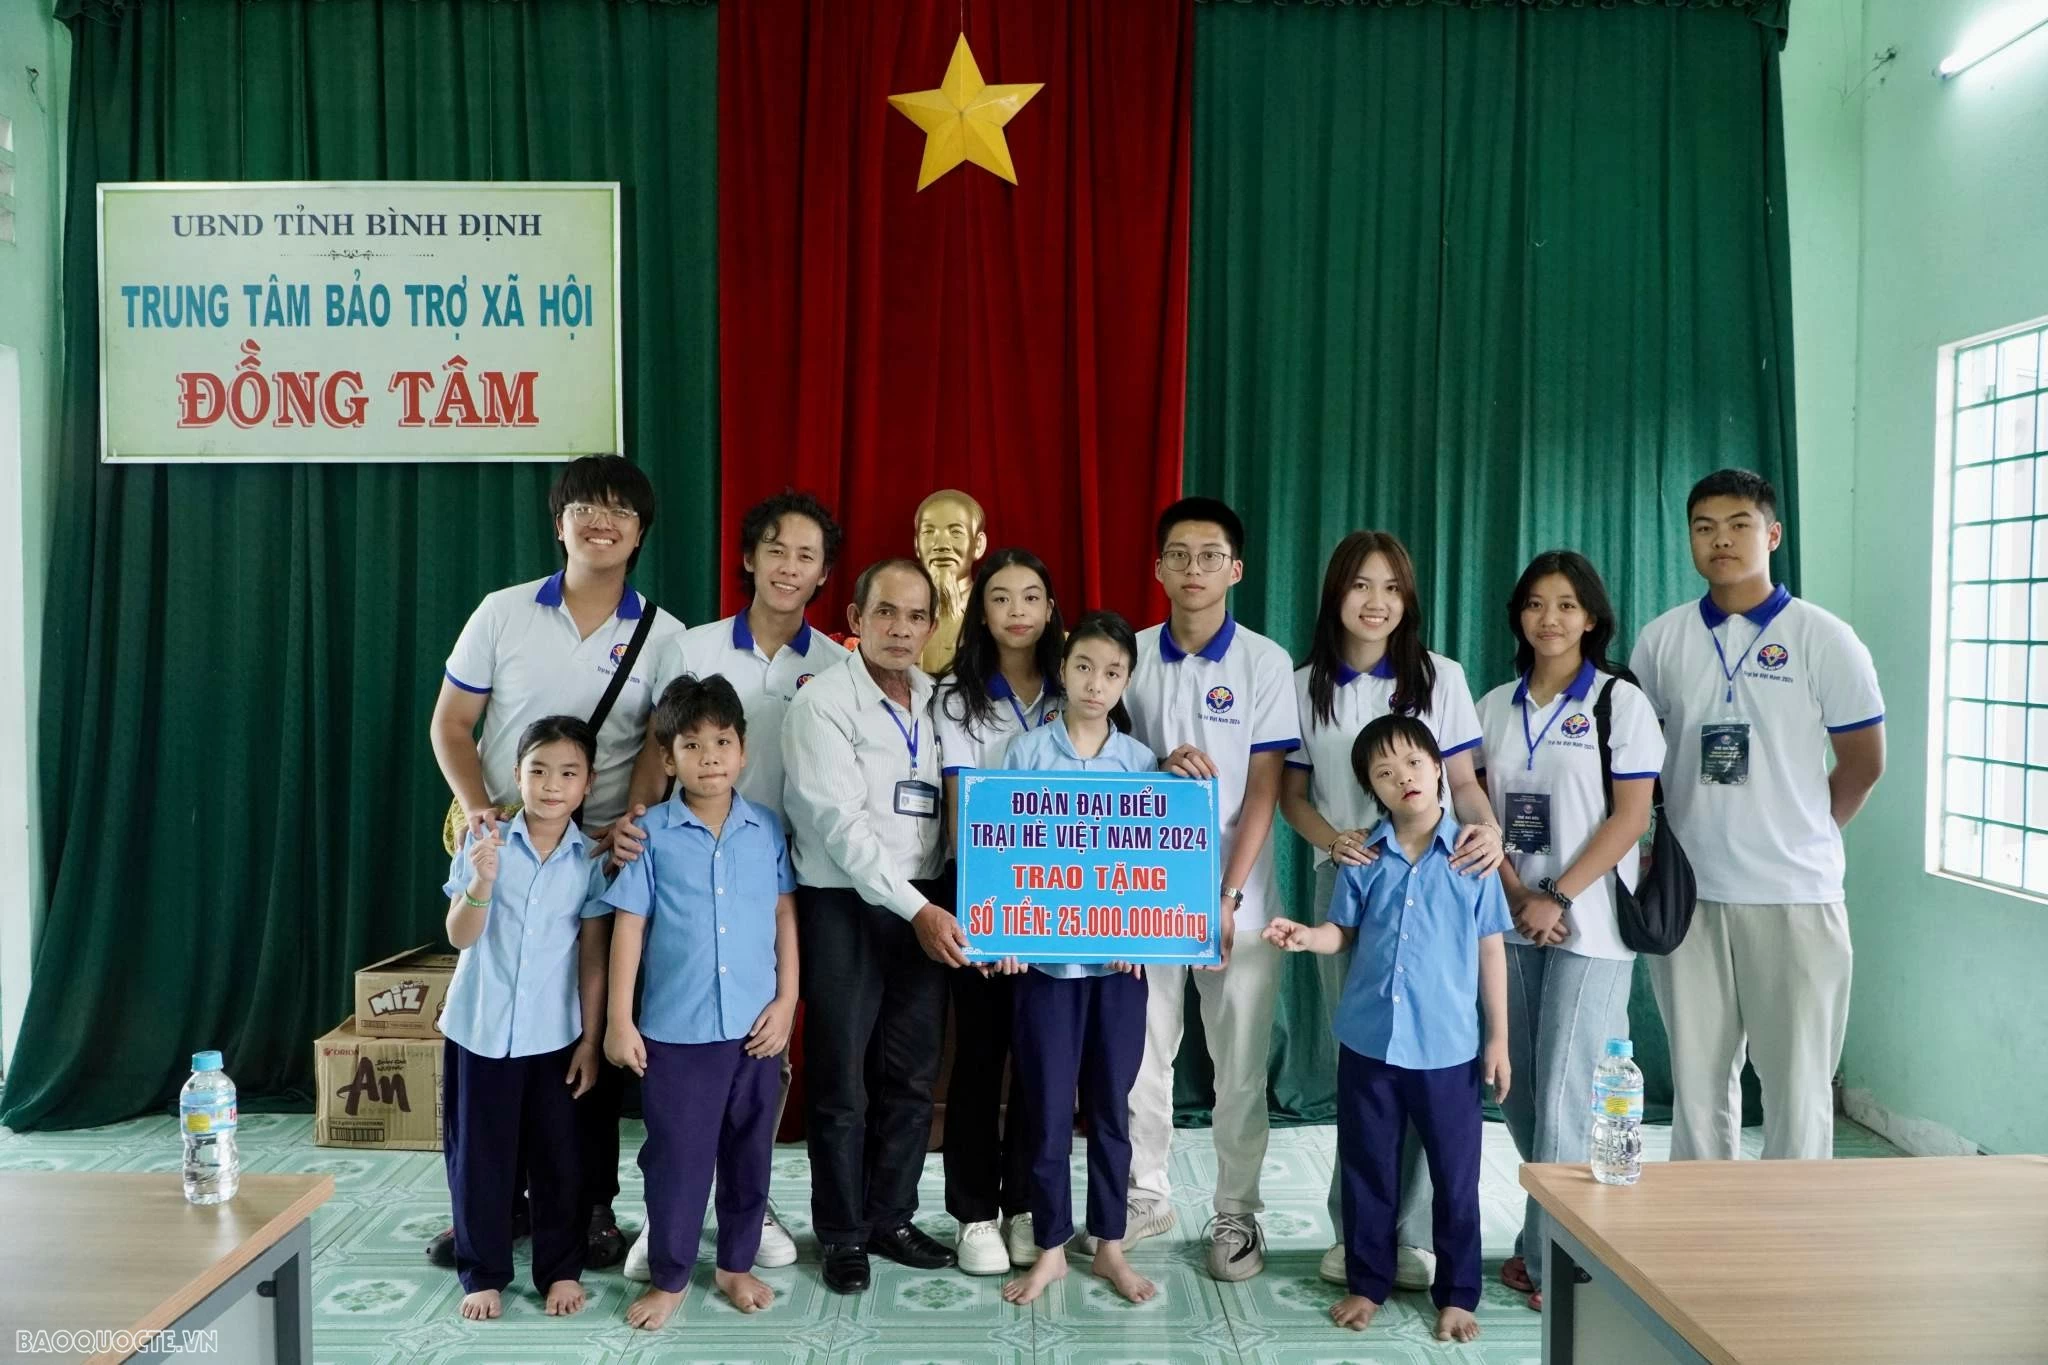 Trại hè Việt Nam 2024: Theo dấu chân lịch sử tại đất võ Bình Định